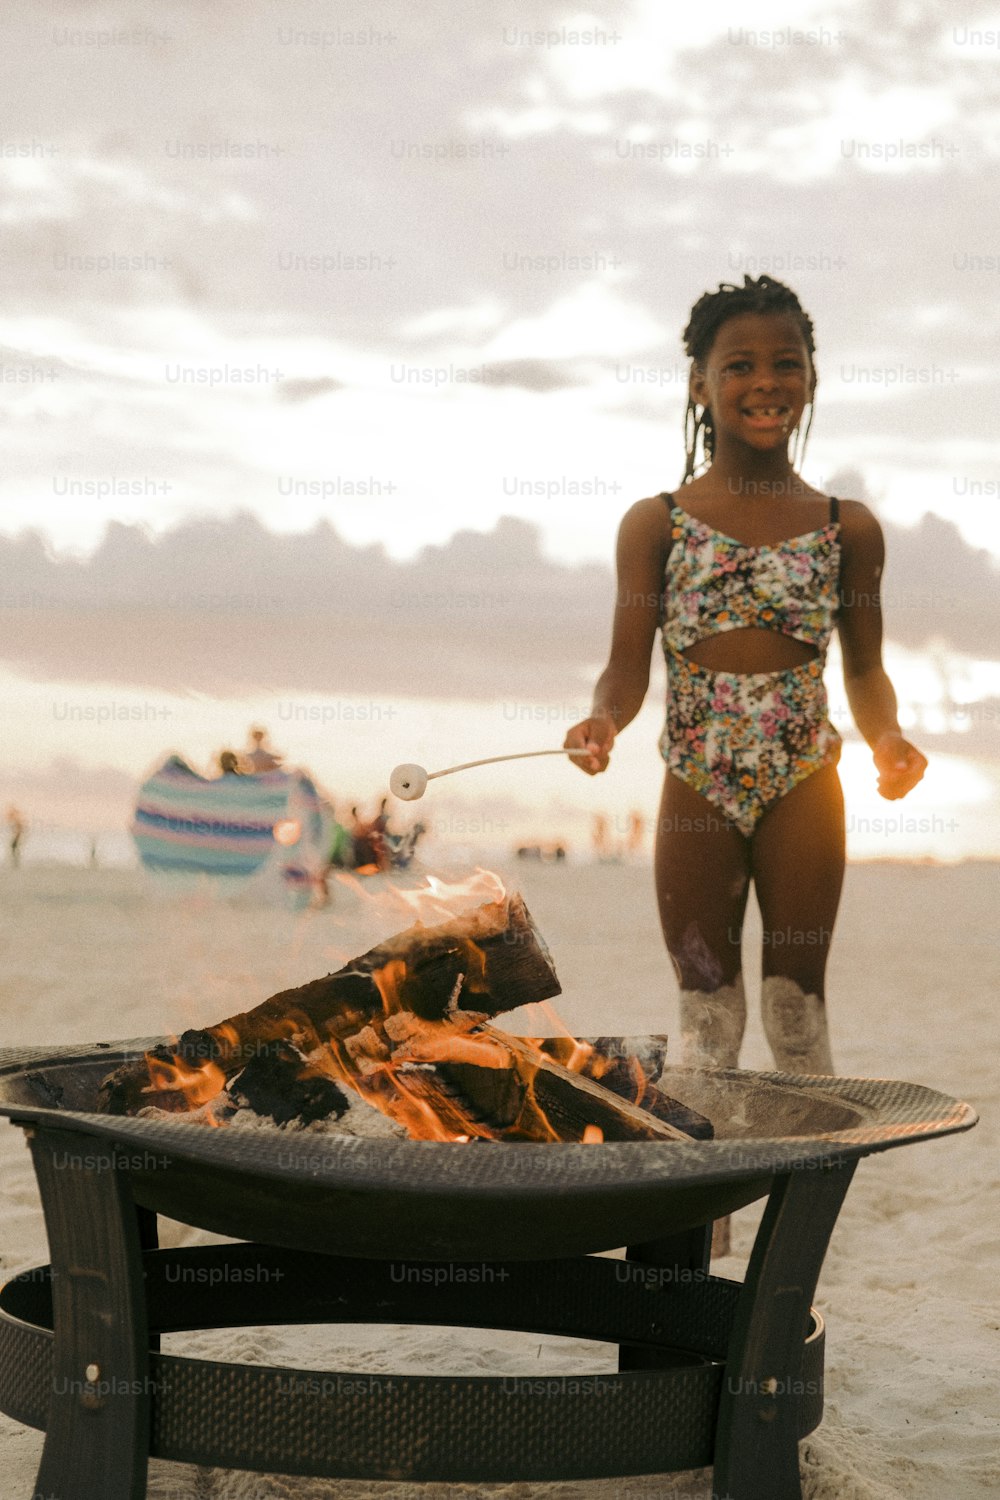 Ein kleines Mädchen, das neben einer Feuerstelle steht